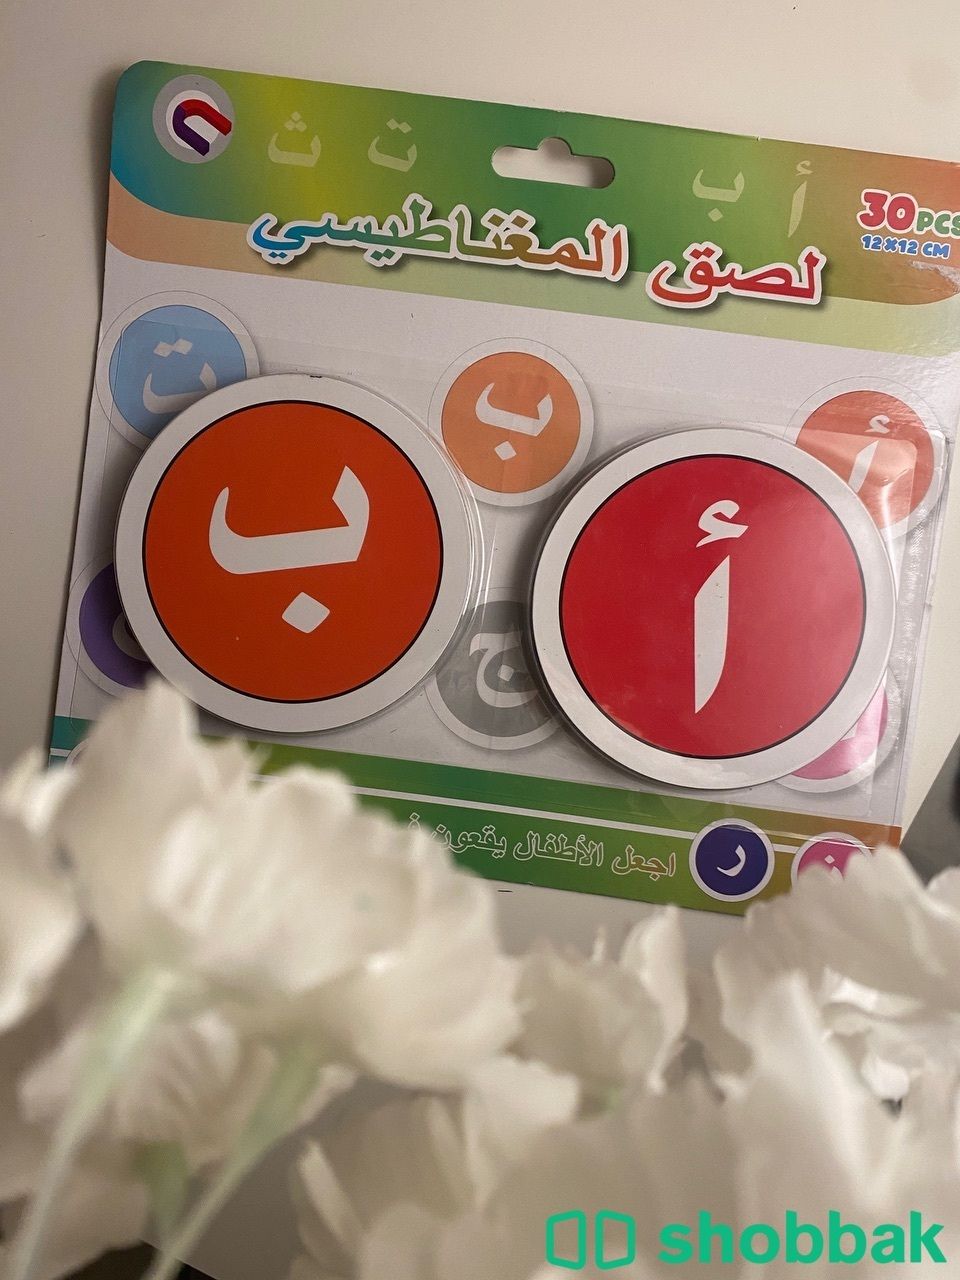 مغناطيس حروف Shobbak Saudi Arabia